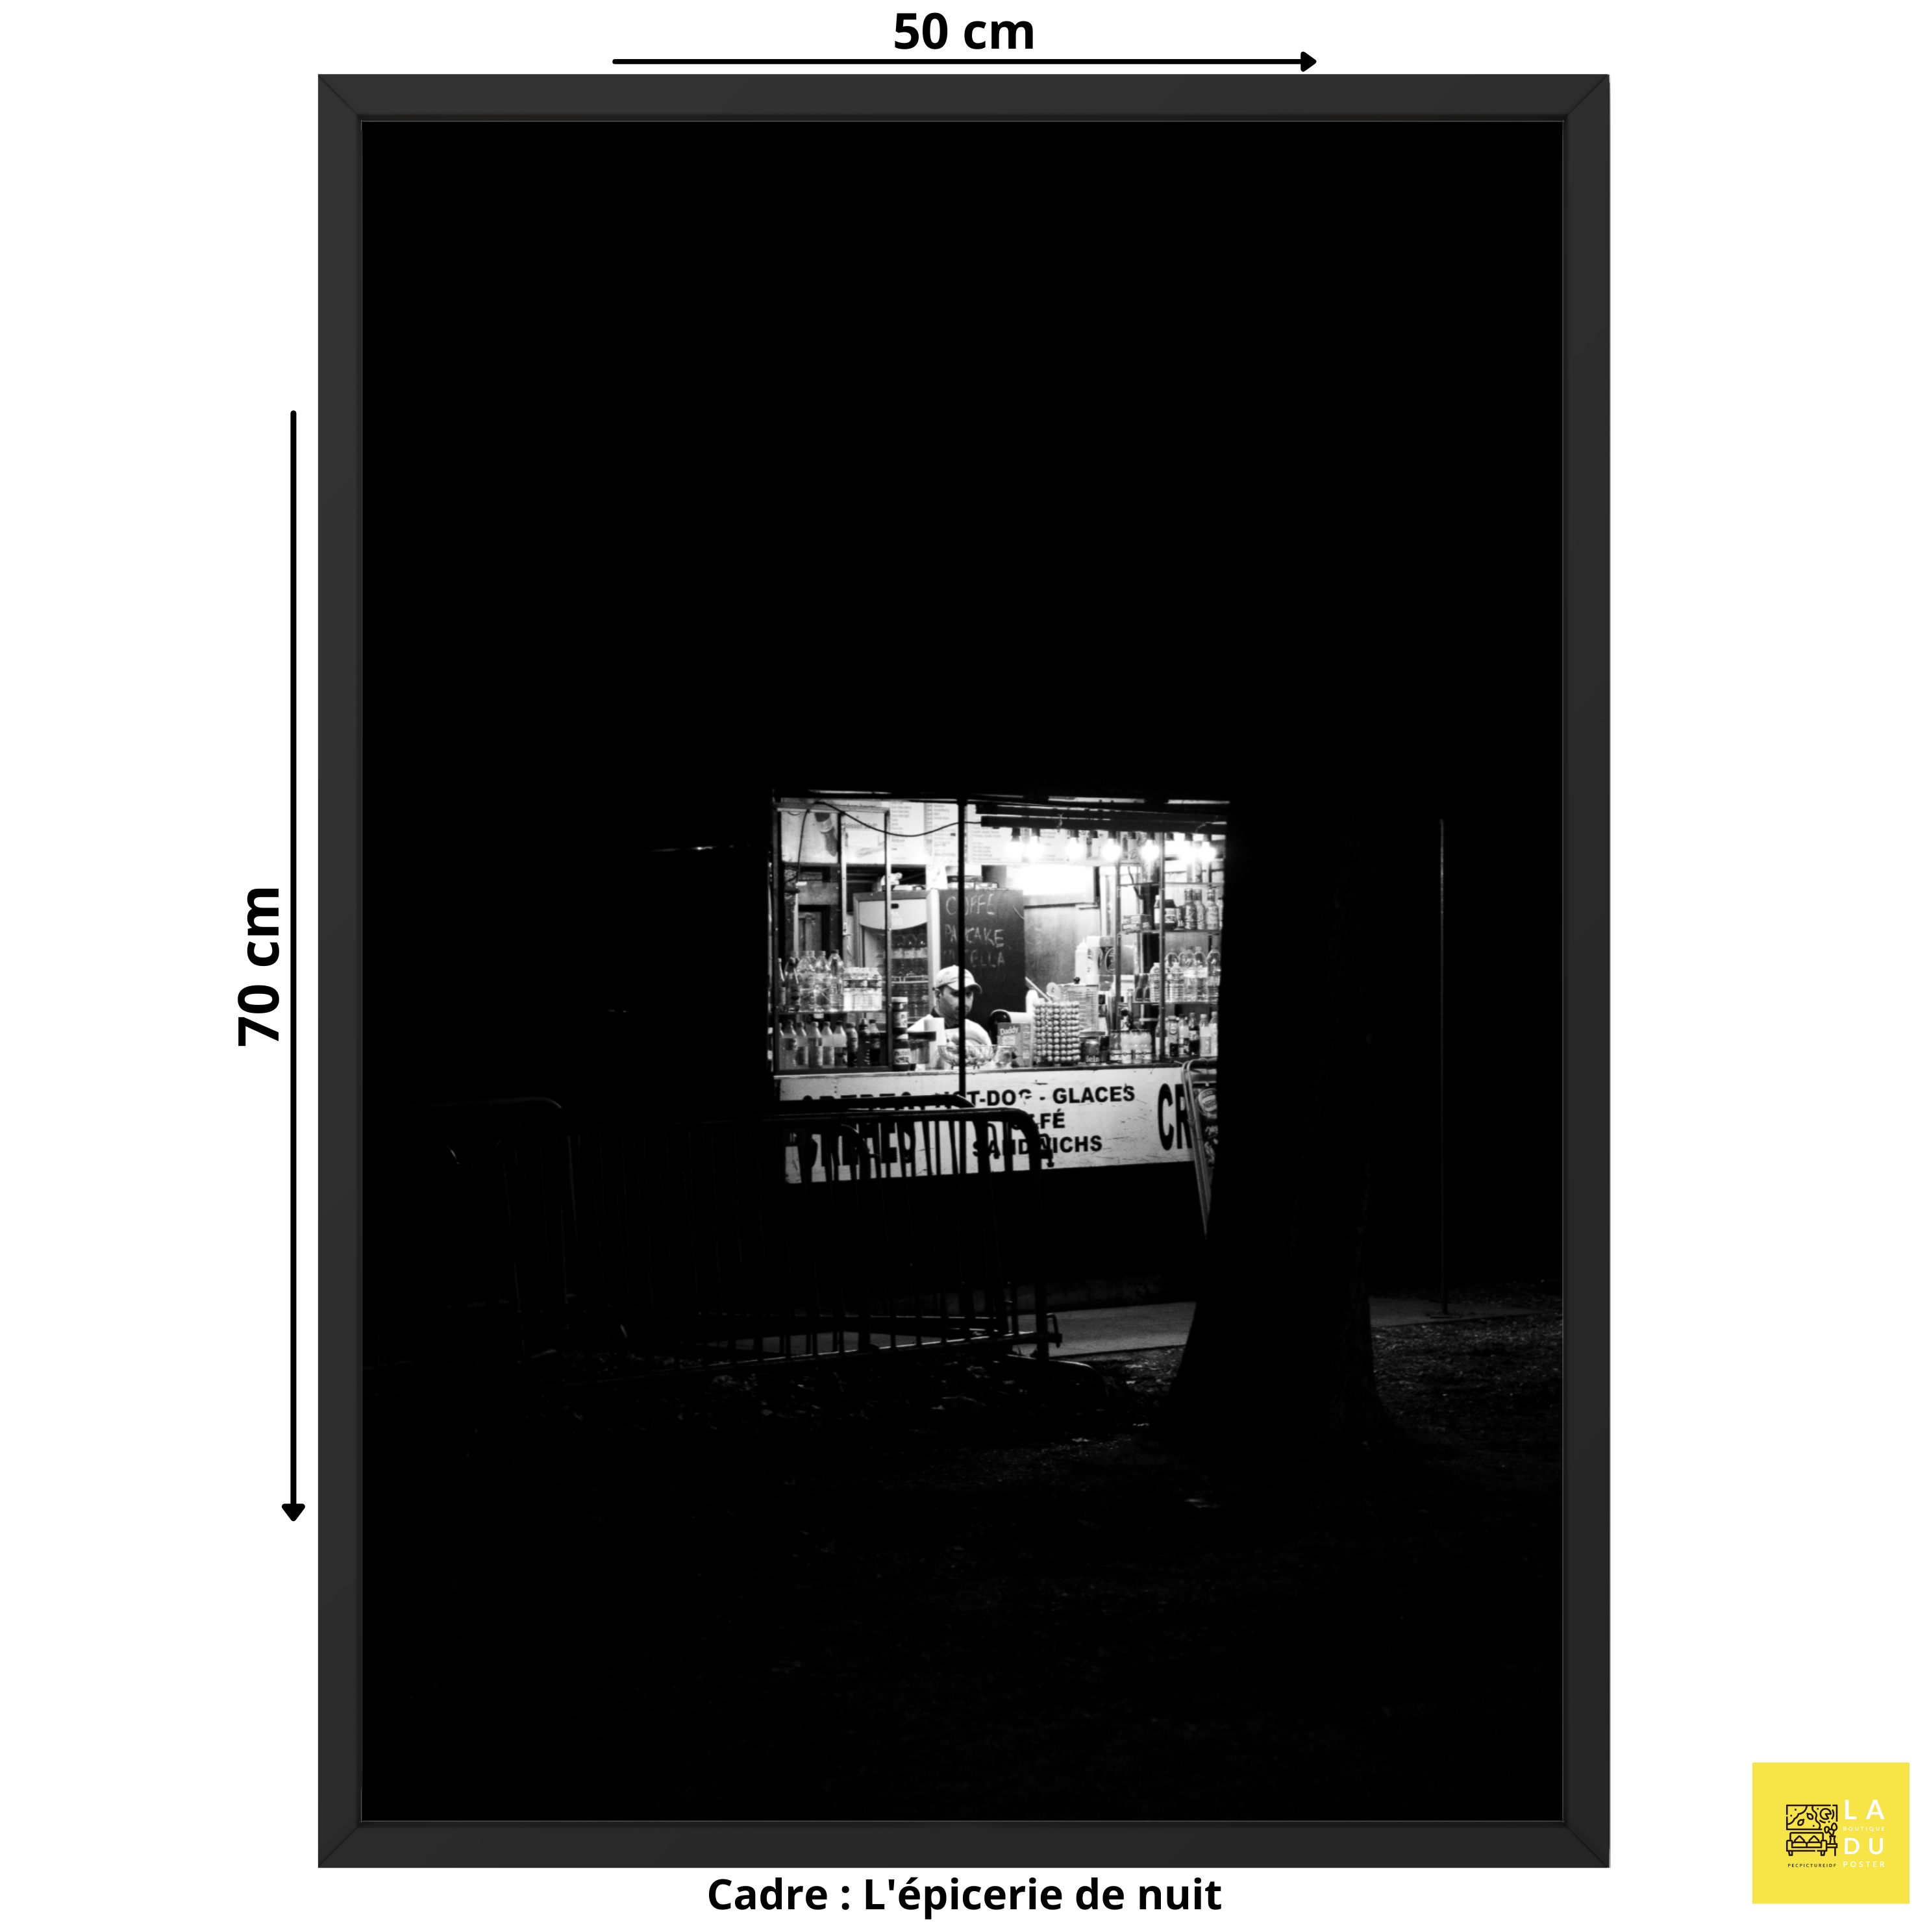 L'épicerie de nuit - Poster encadré - La boutique du poster Français